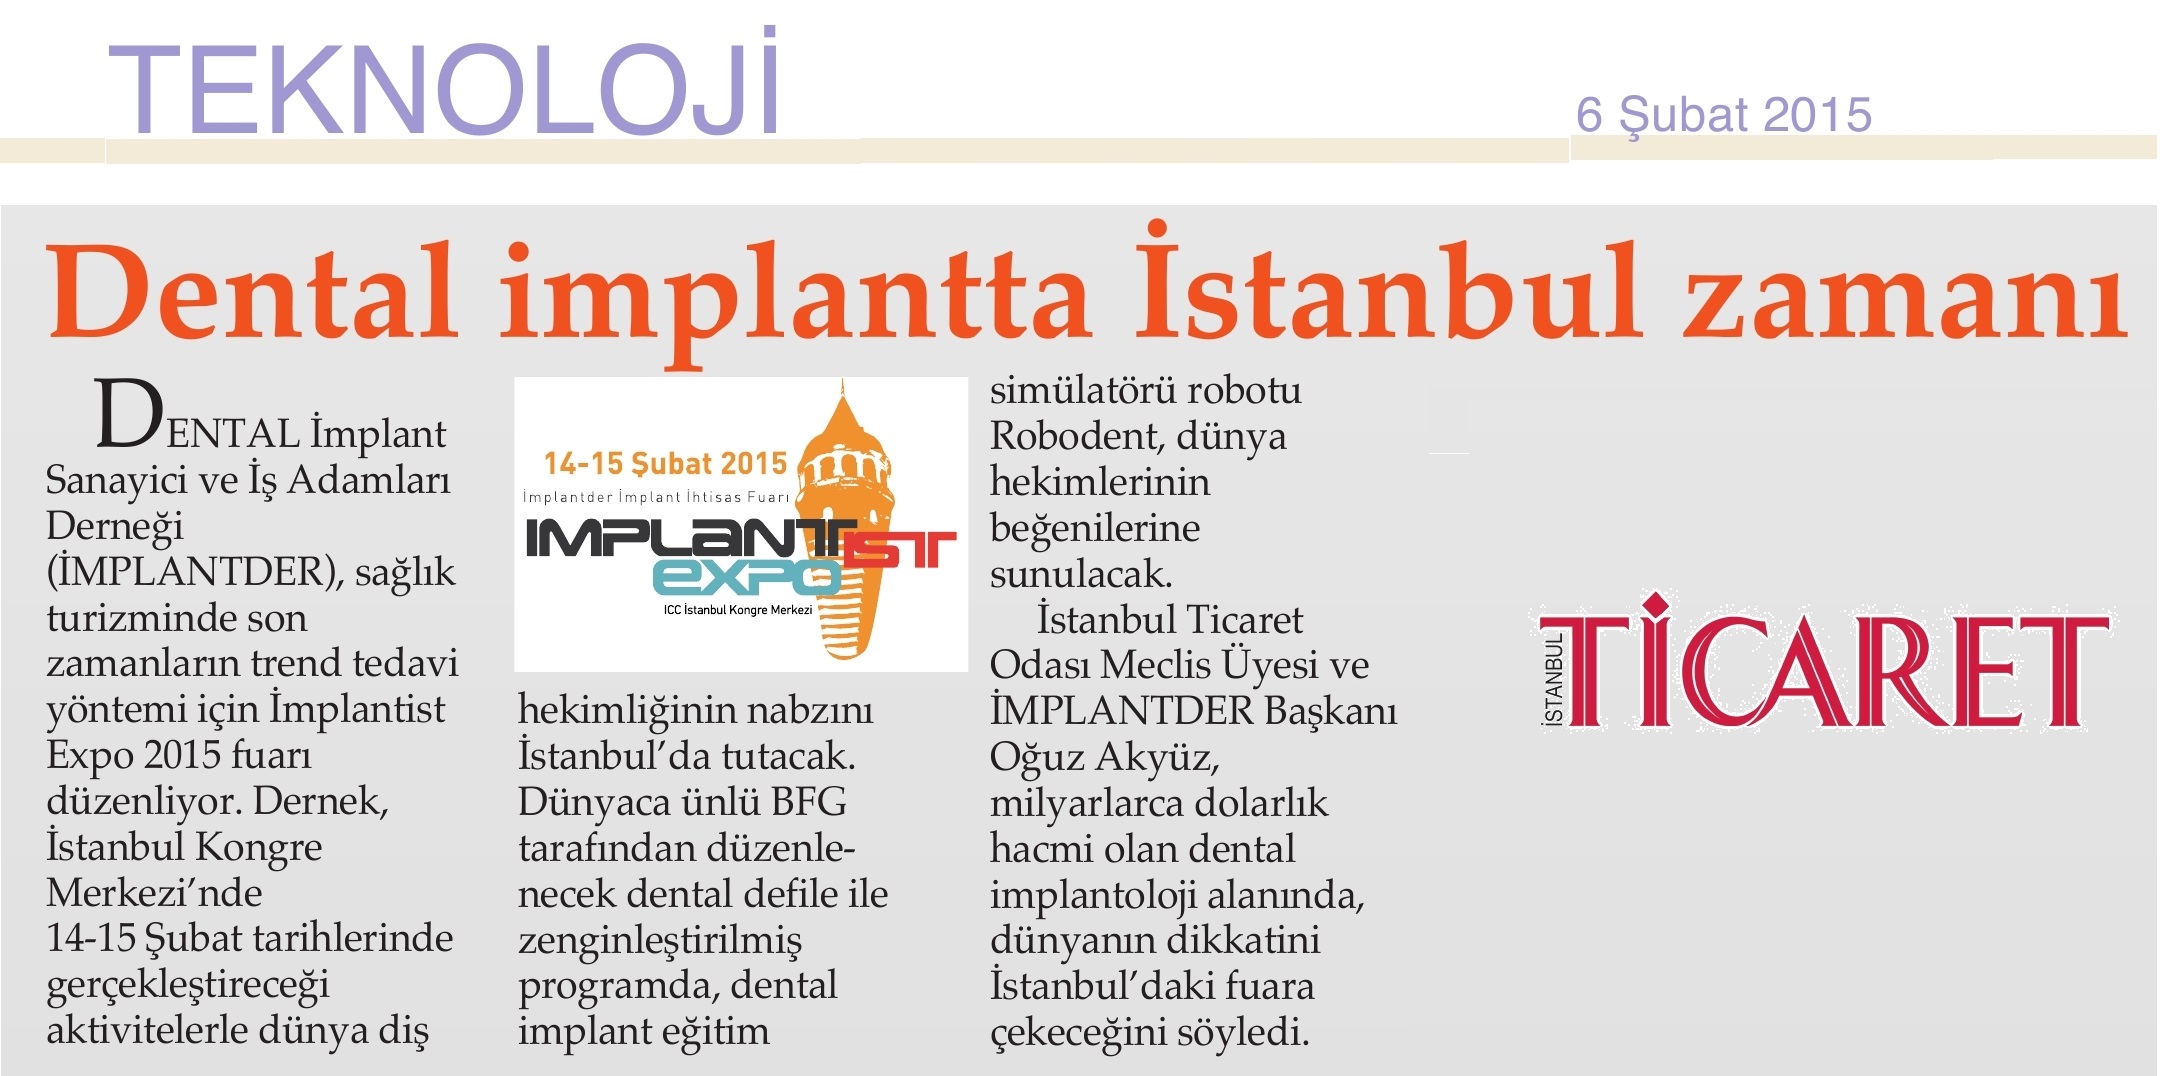 Dental implantta İstanbul zamanı